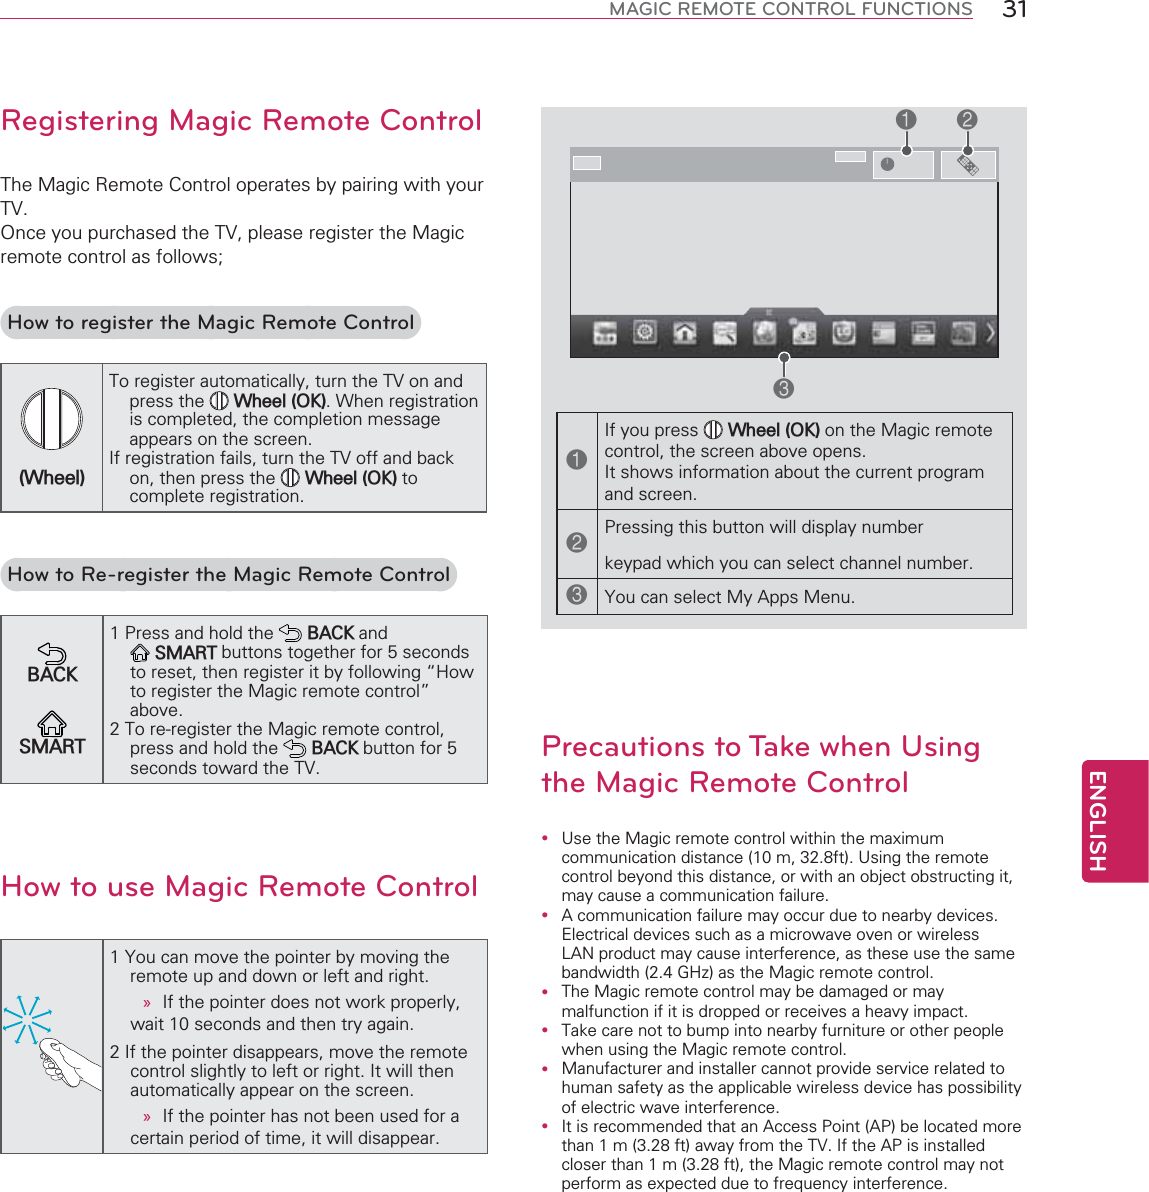 ENGLISH31MAGIC REMOTE CONTROL FUNCTIONSRegistering Magic Remote Control$0&amp;$1*$10=How to register the Magic Remote Control$$1 &lt;$1  How to Re-register the Magic Remote Control@3 E6(07B$#0 E$1How to use Magic Remote Control@O»@AB»L1321 0233O00Precautions to Take when Using the Magic Remote Controly ,08 @ADB?!,%y +./ BC&gt;(&quot;!0y $0y $0y 0y 3 3!@ DB?!$13@ DB?!085